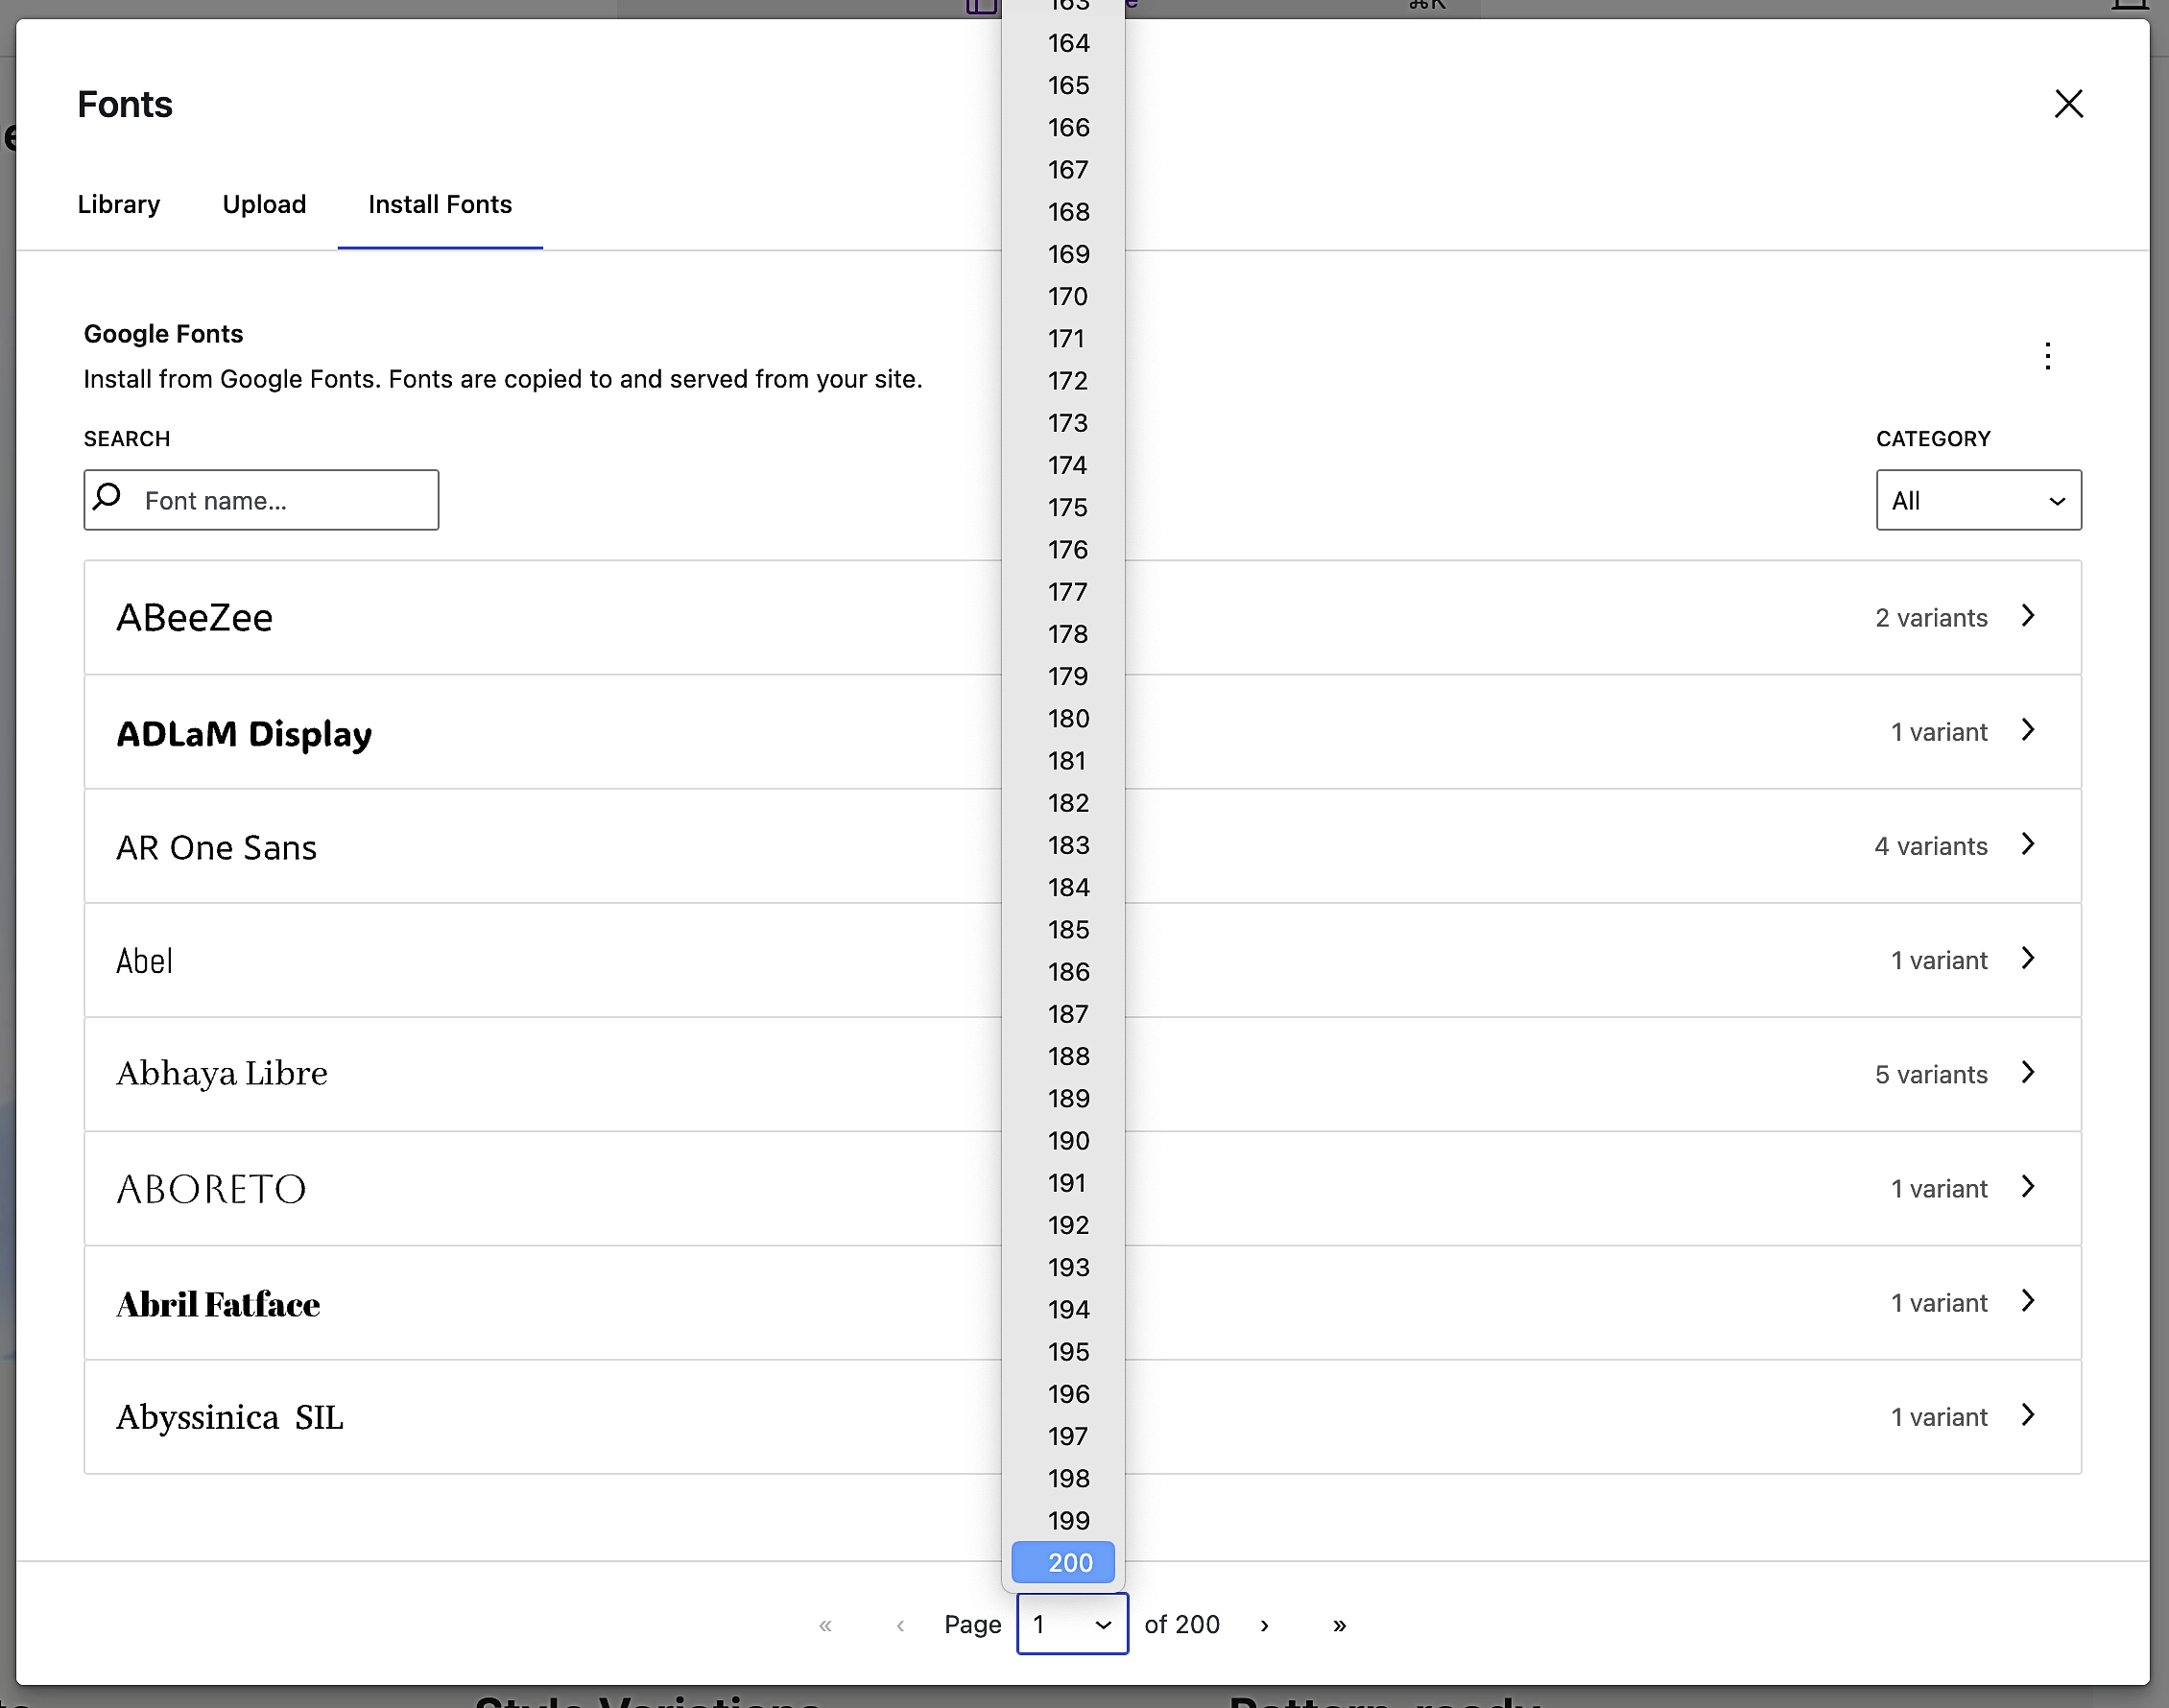 Cela montre que vous avez accès à plus de 200 pages de choix de polices dans Google Fonts.